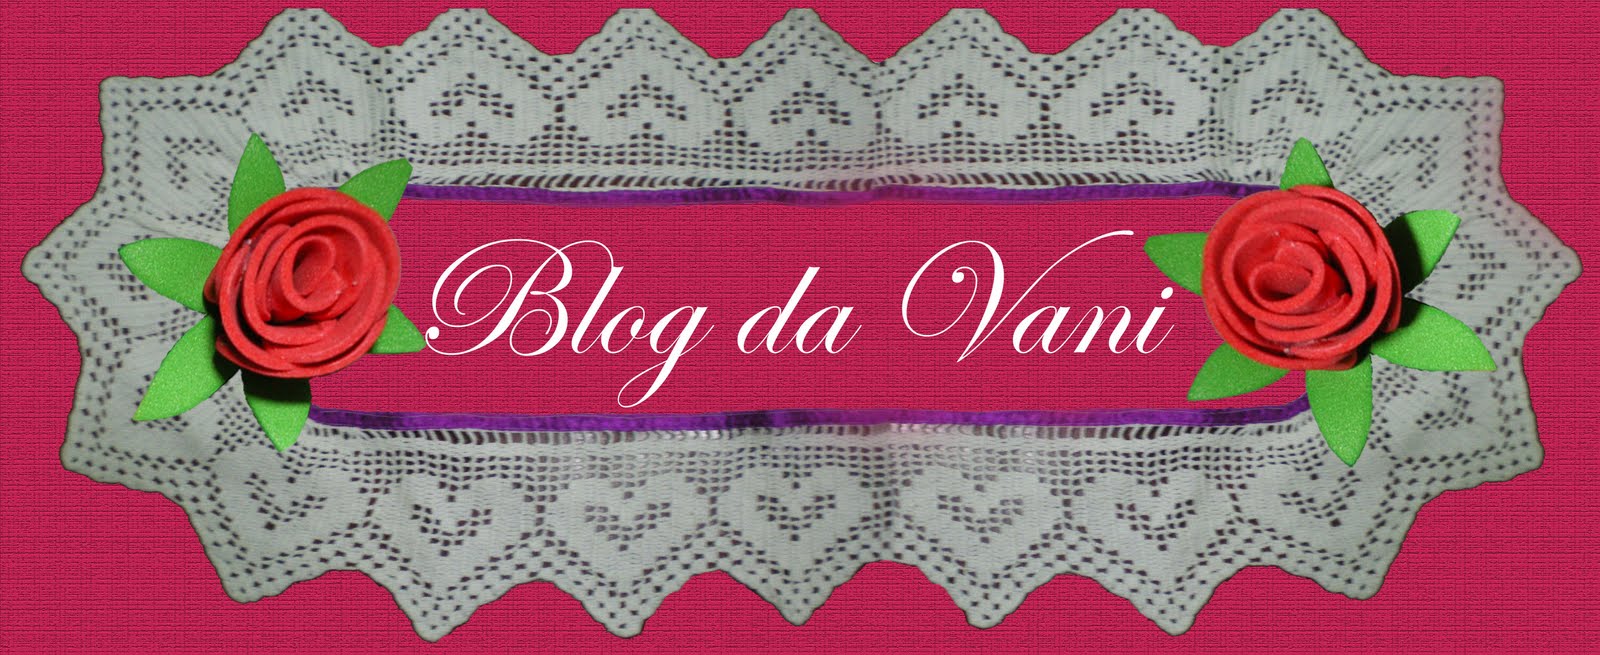 Blog da Vani